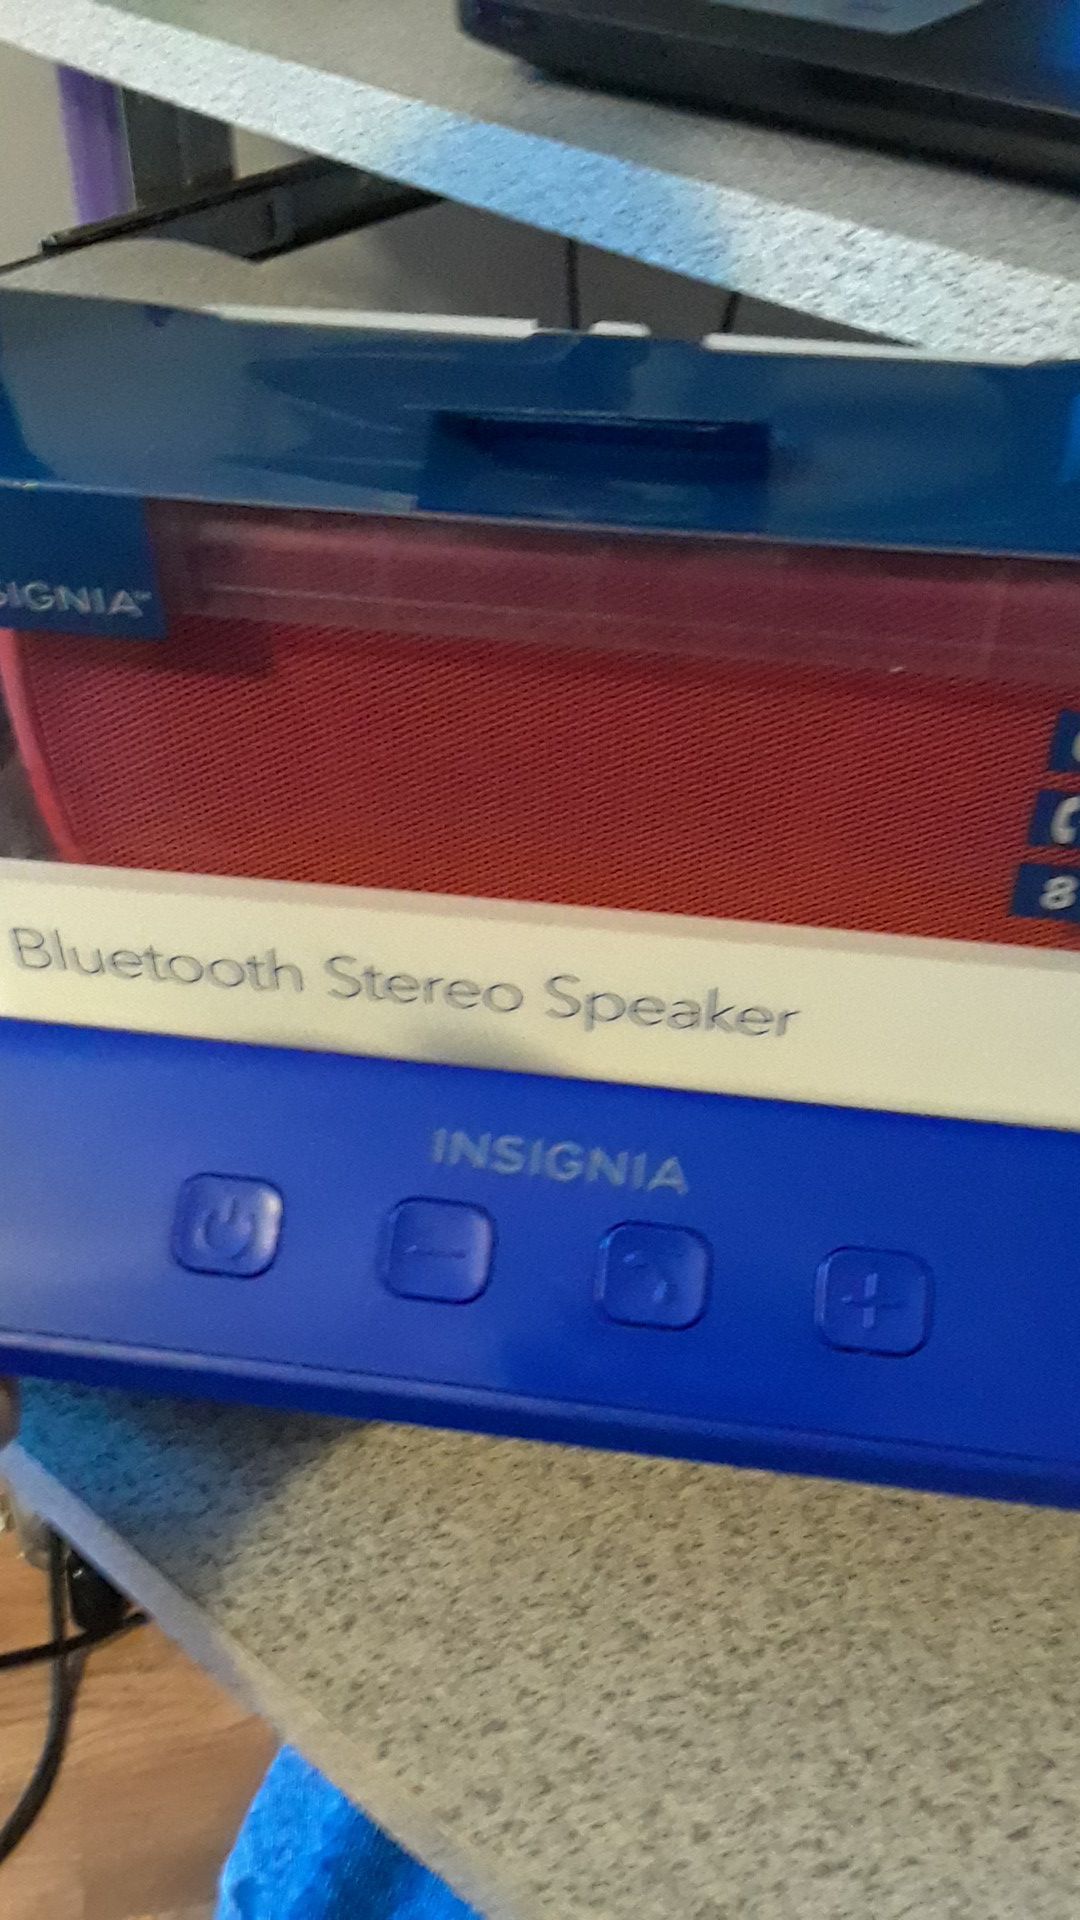 Insignia bluetooth speakers.